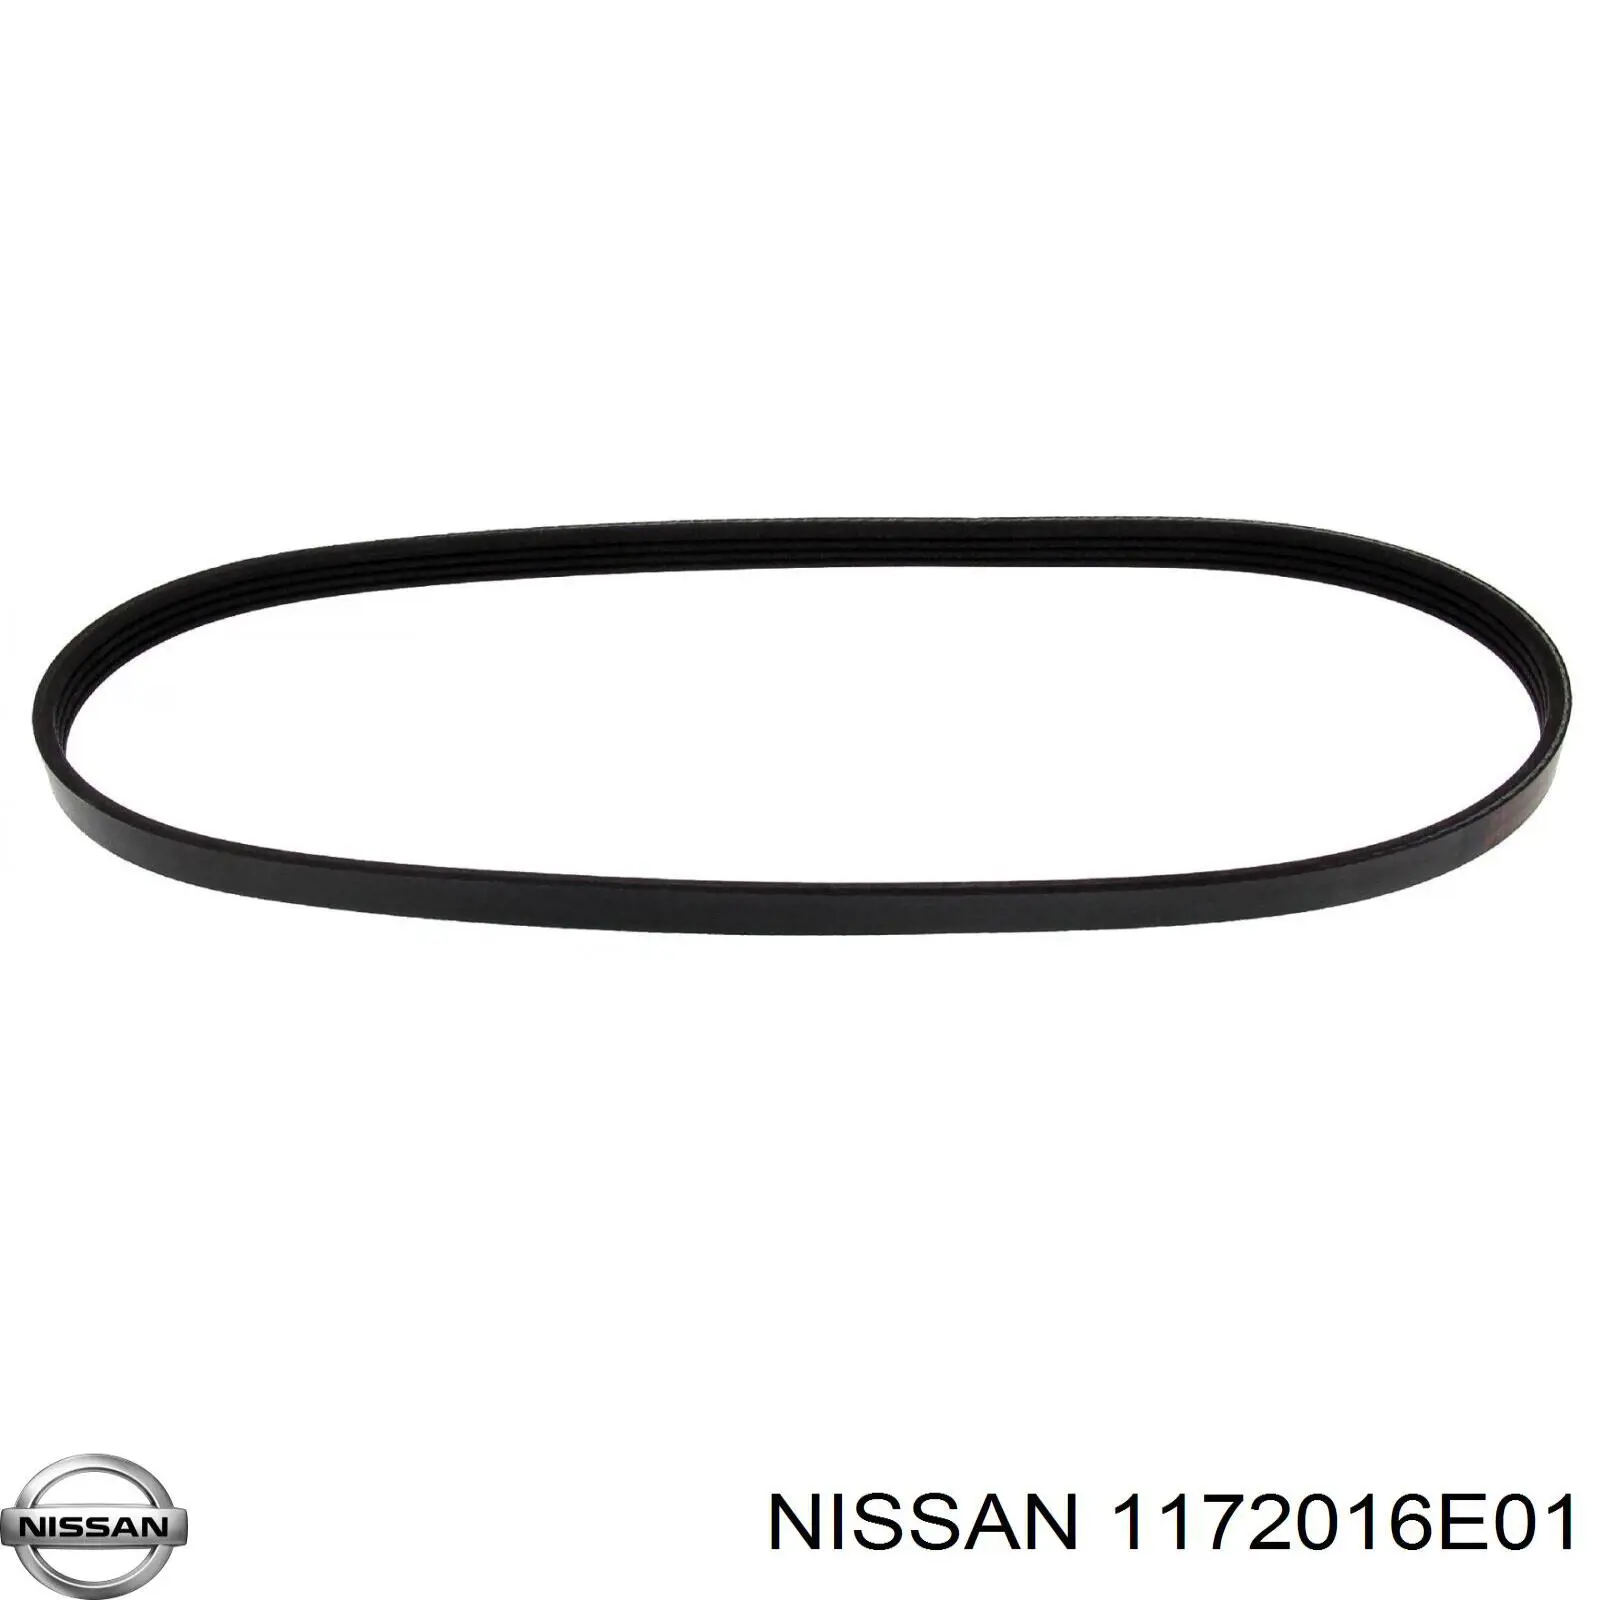 1172016E01 Nissan correa trapezoidal